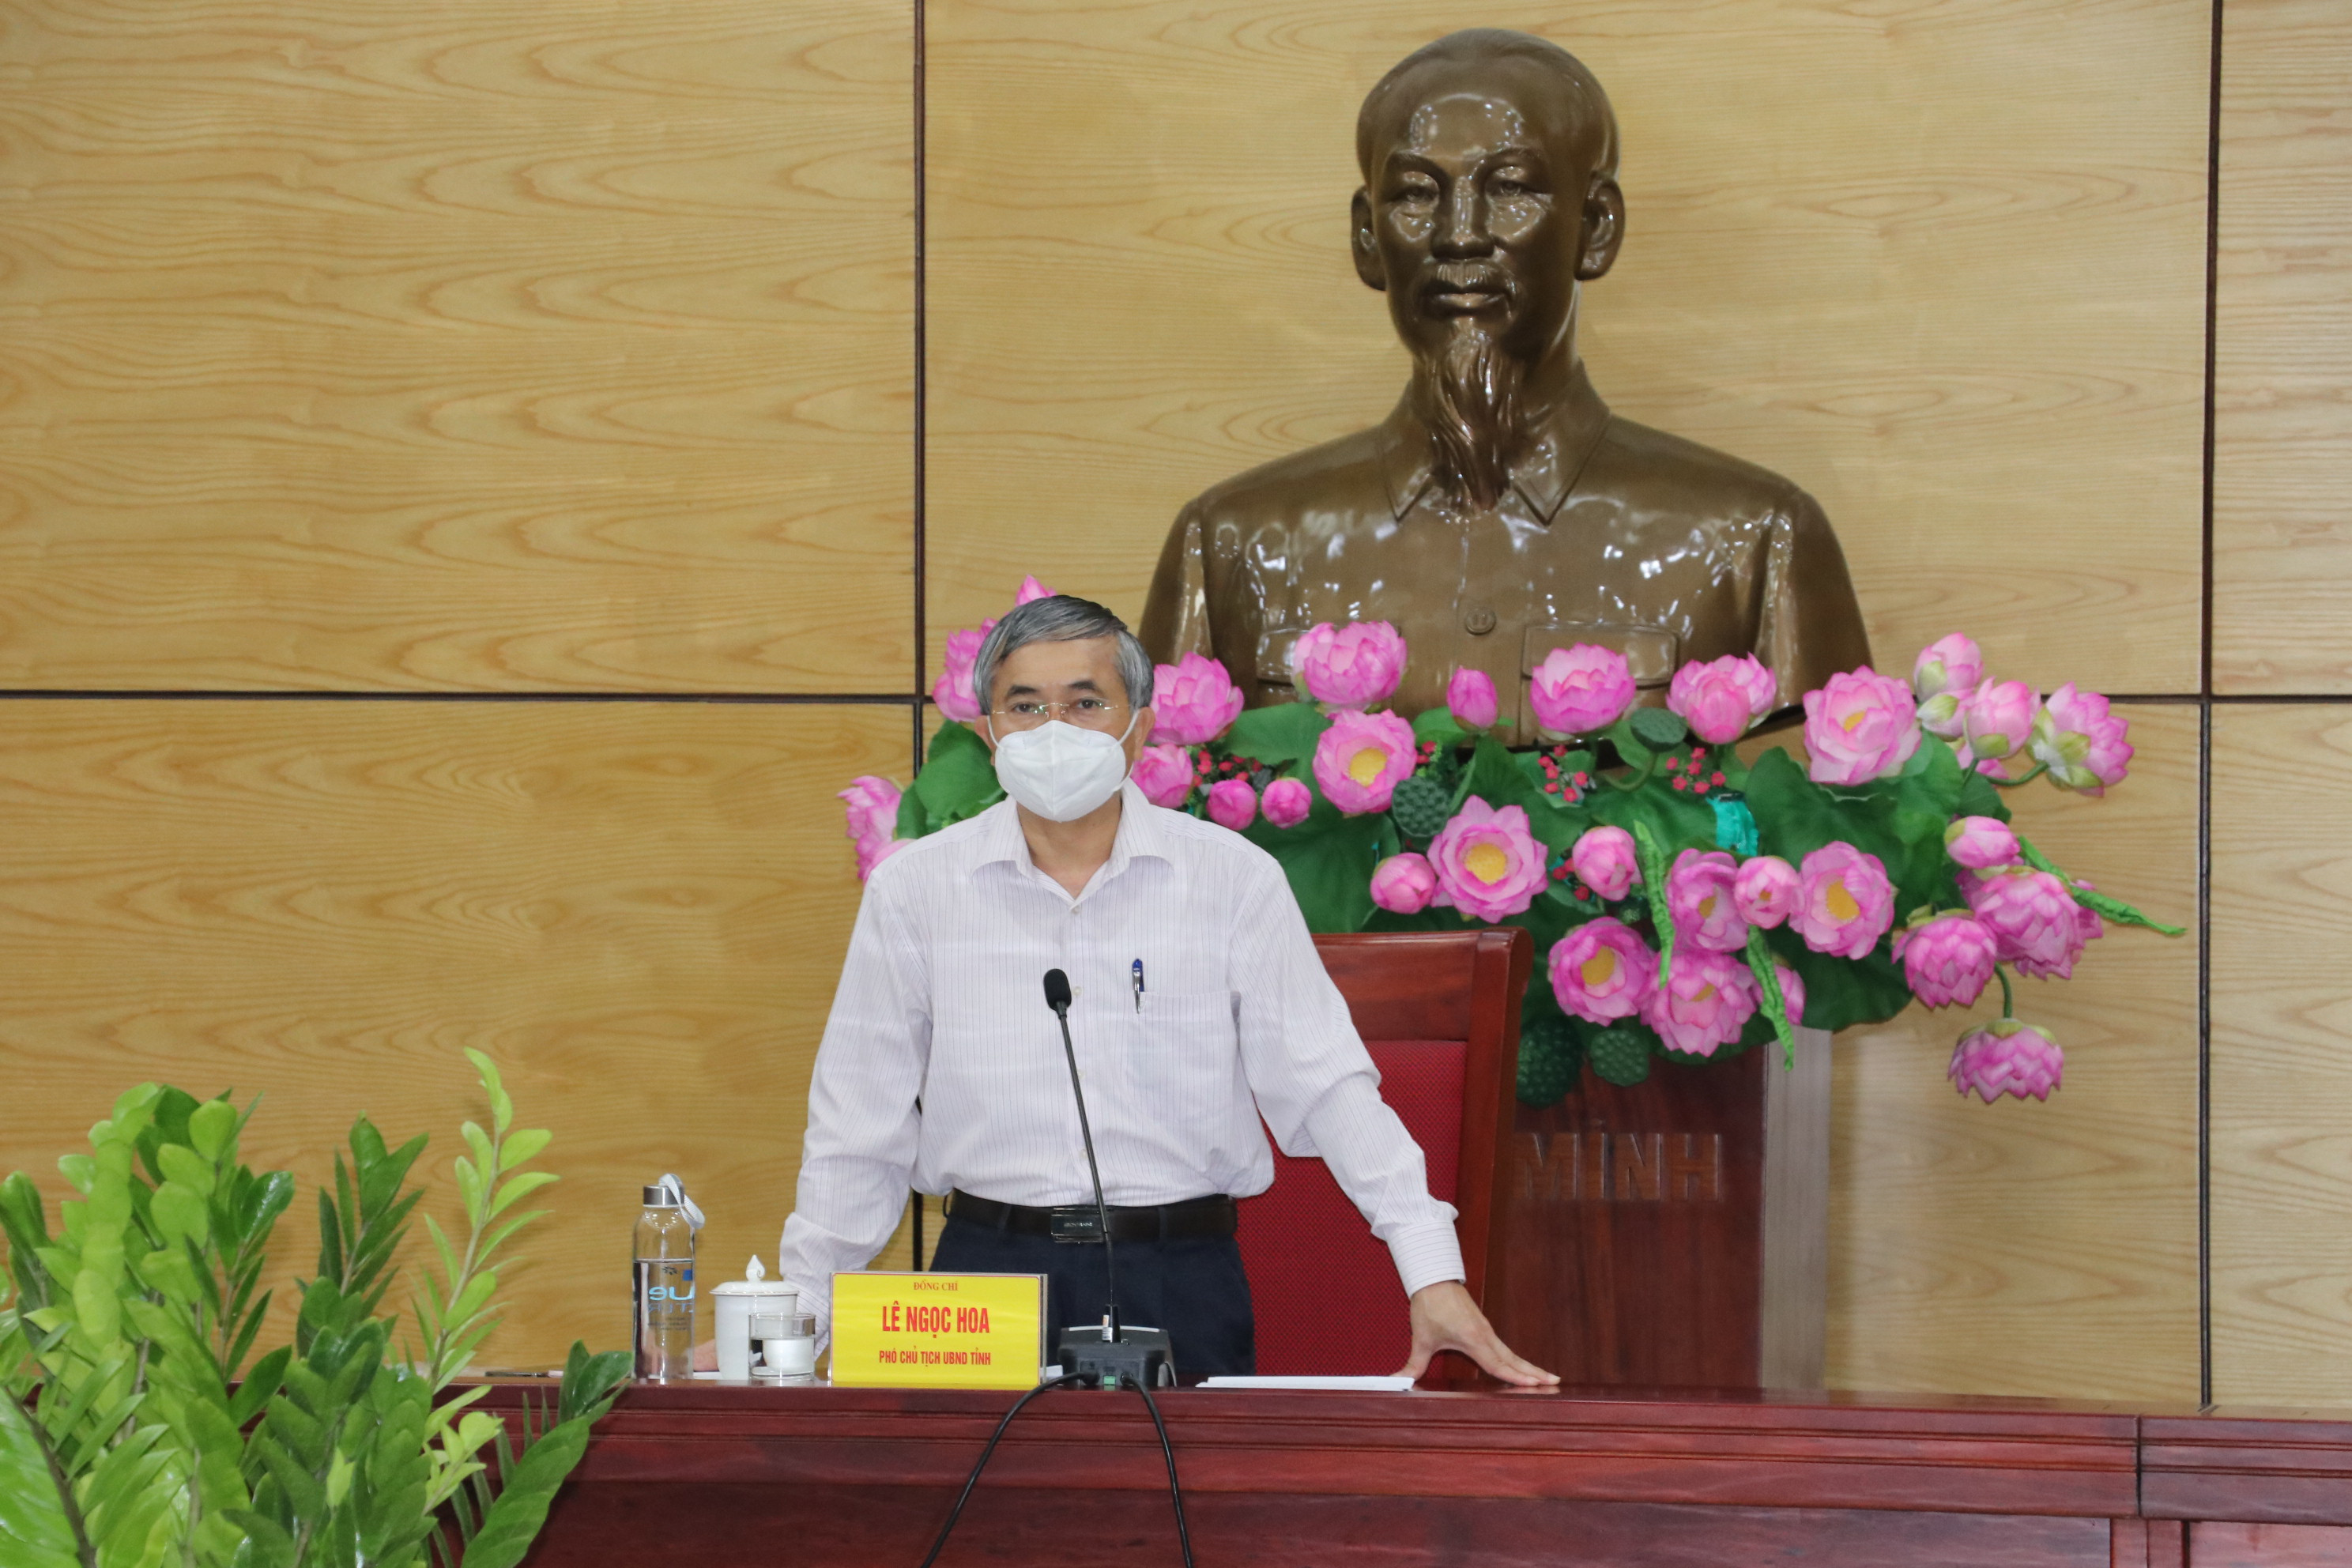 Phát biểu kết luận tại buổi Giao ban, Phó Chủ tịch UBND tỉnh Lê Ngọc Hoa đề nghị các sở, ban ngành tiếp tục rà soát lại chính sách để trả lời các kiến nghị của c